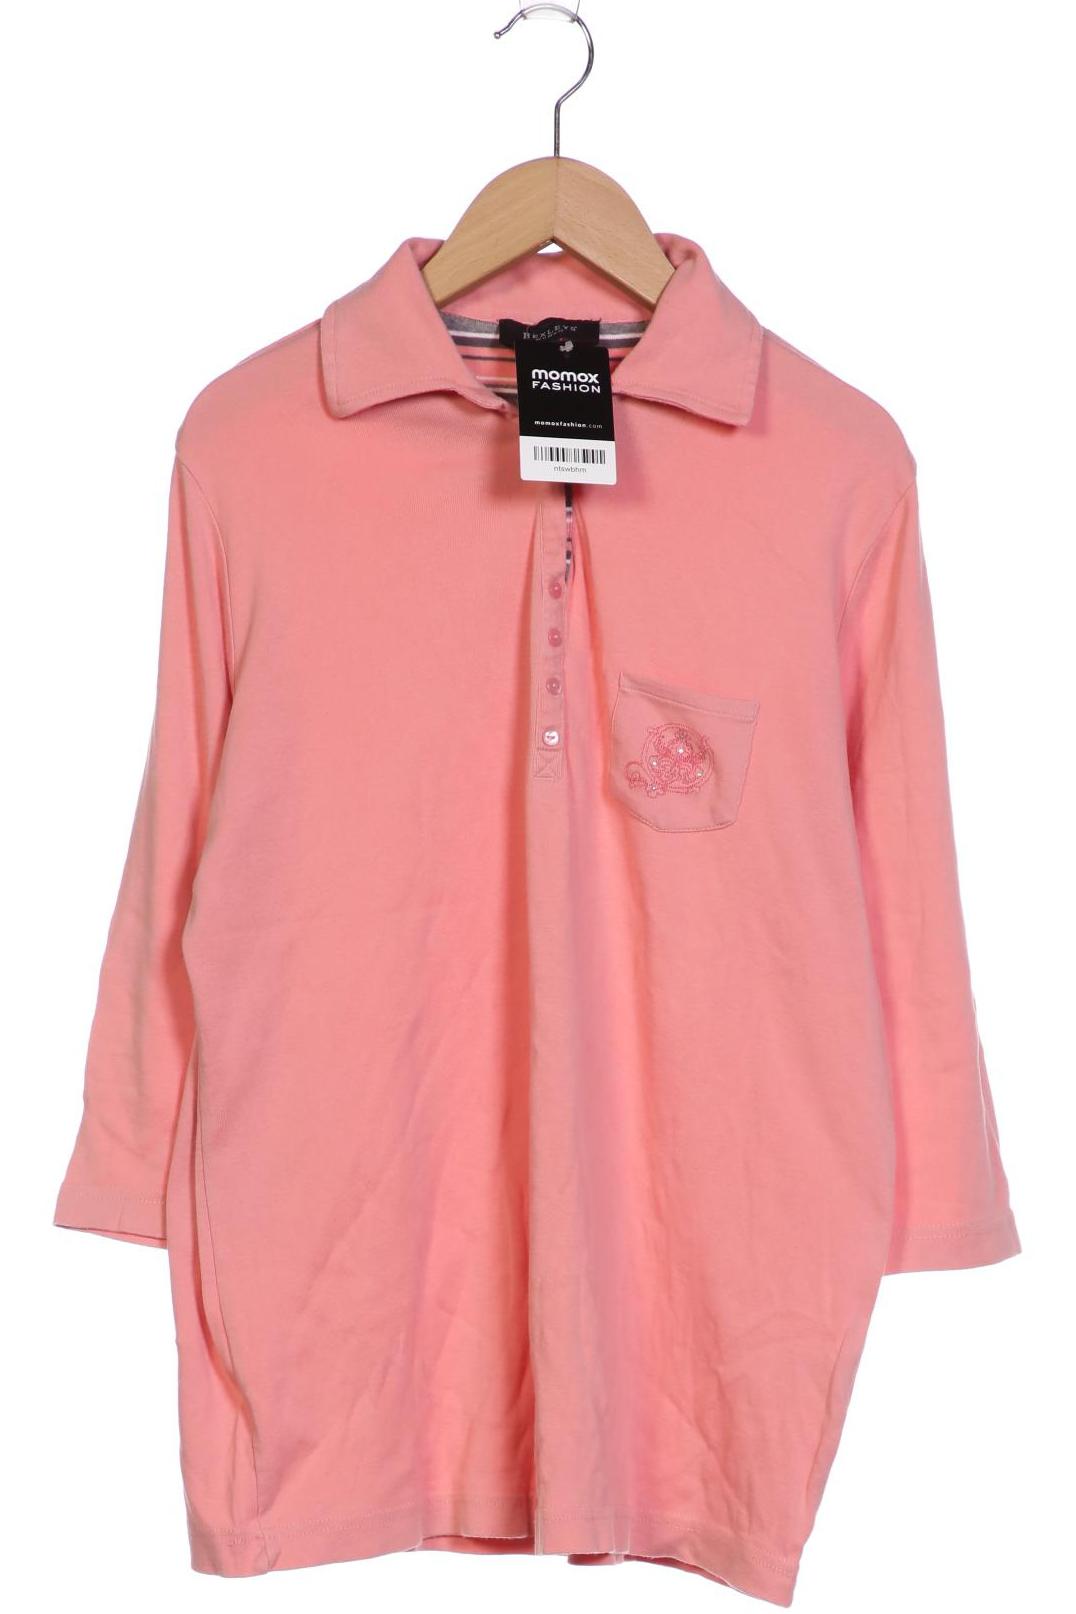 Bexleys Damen Langarmshirt, pink von Bexleys